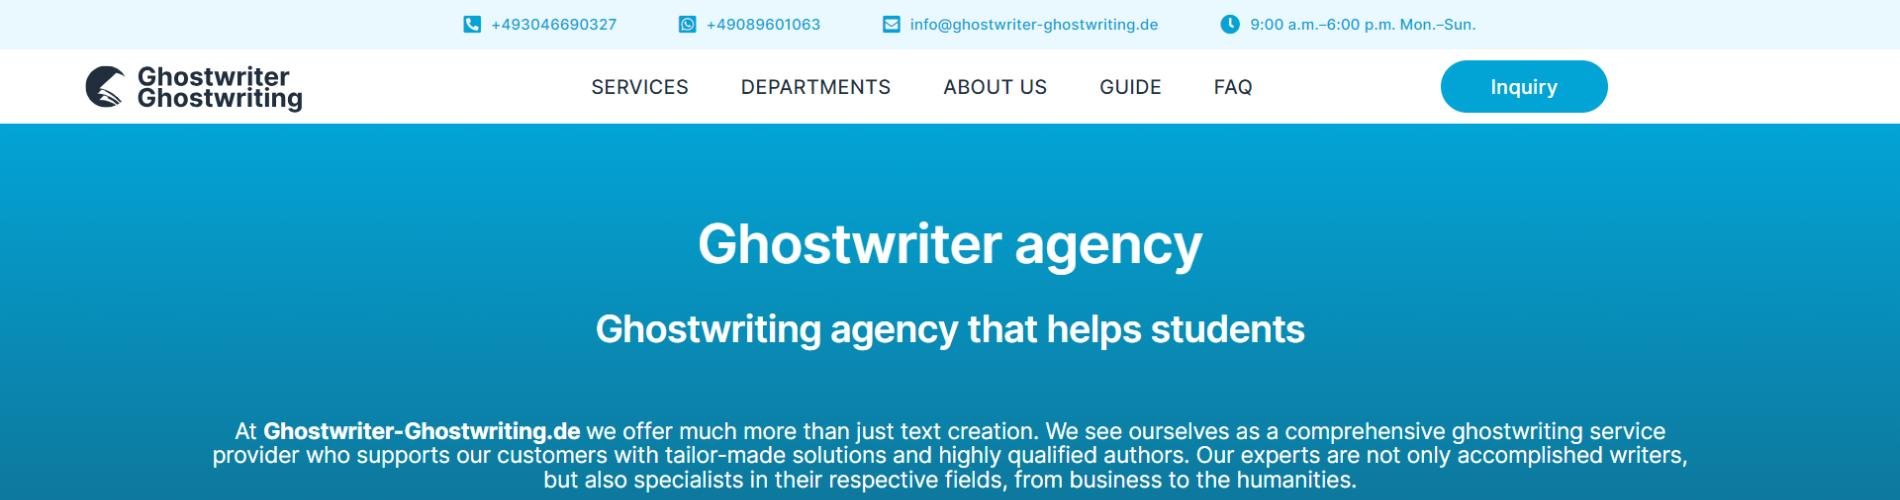 Ghostwriter Ghostwriting cover